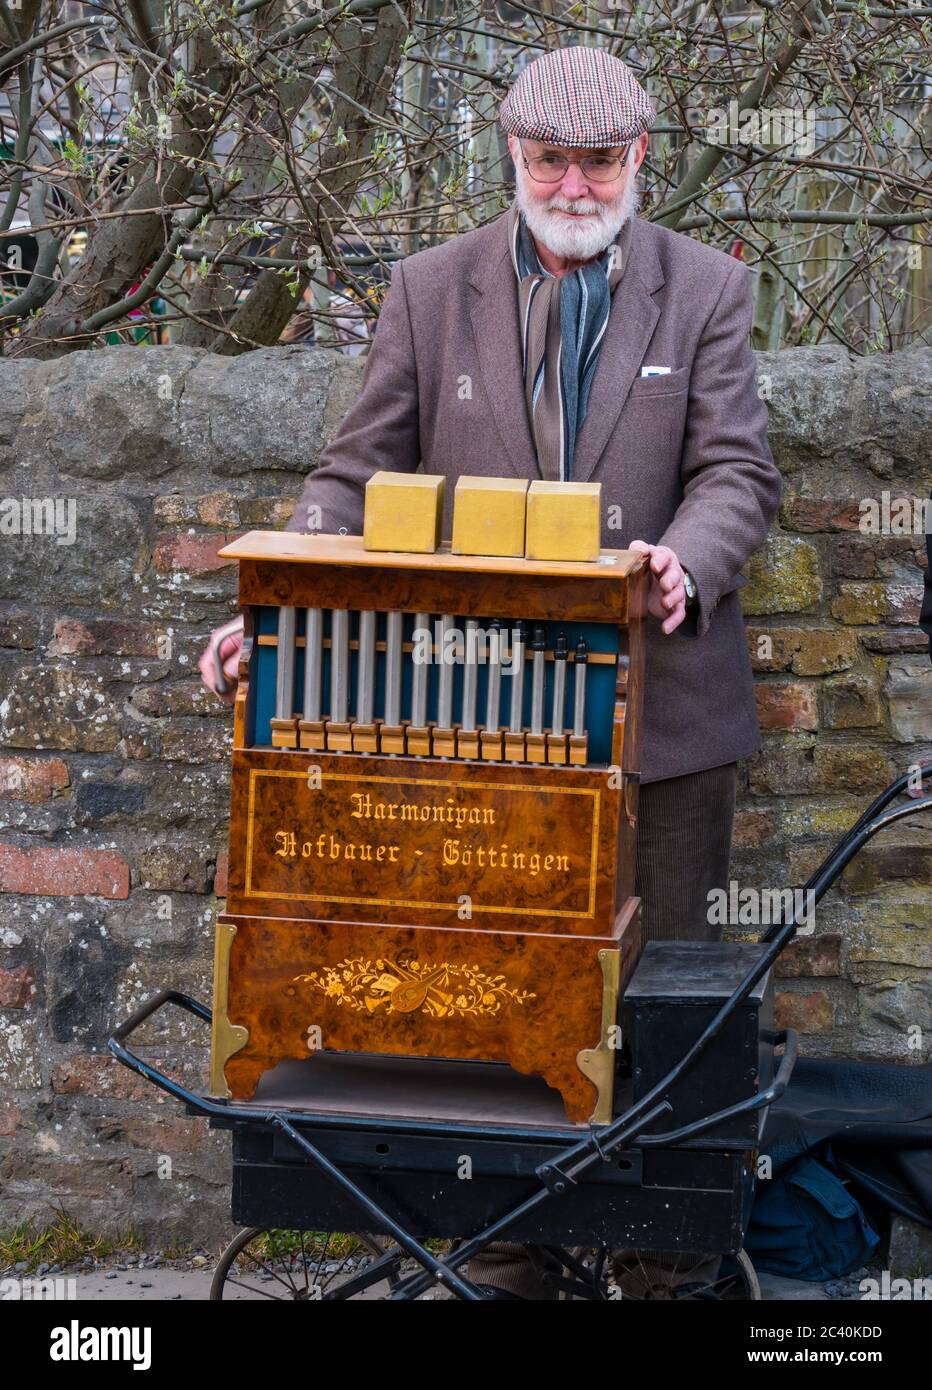 Homme en costume d'époque comme moulin à orgue avec orgue de rue allemand ou harmonipan, Beamish Museum, Durham County, Angleterre, Royaume-Uni Banque D'Images